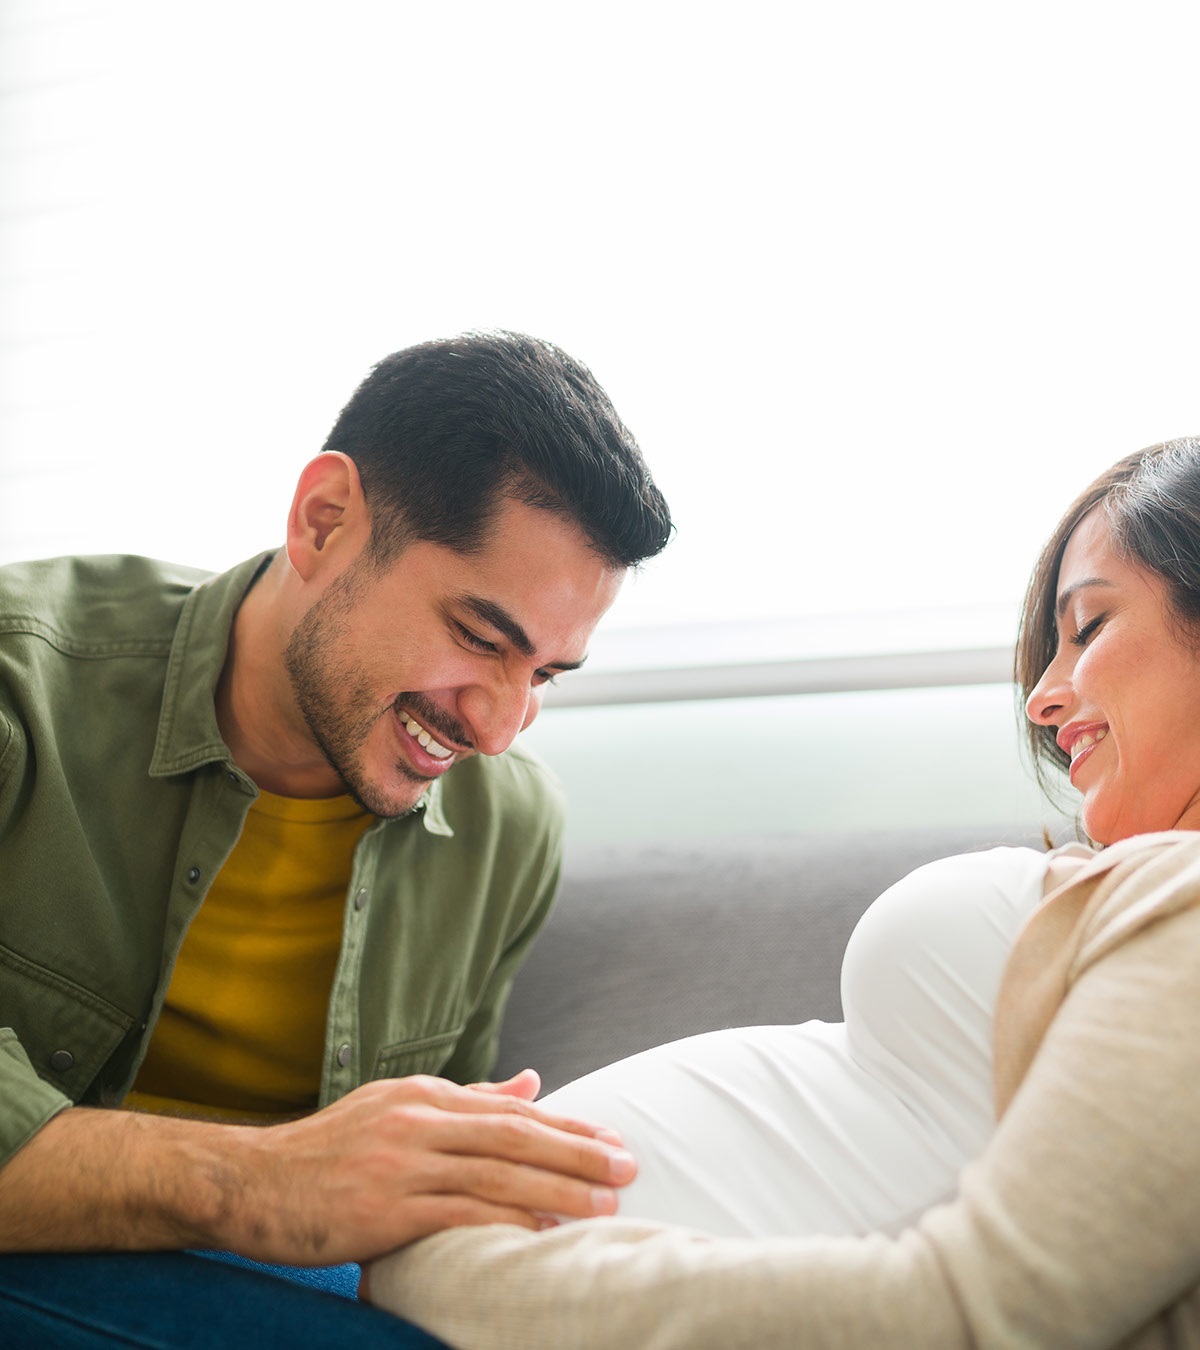 प्रेगनेंसी के दौरान पति पत्नी का रिश्ता कैसा होना चाहिए? | Husband And Wife Relationship During Pregnancy In Hindi